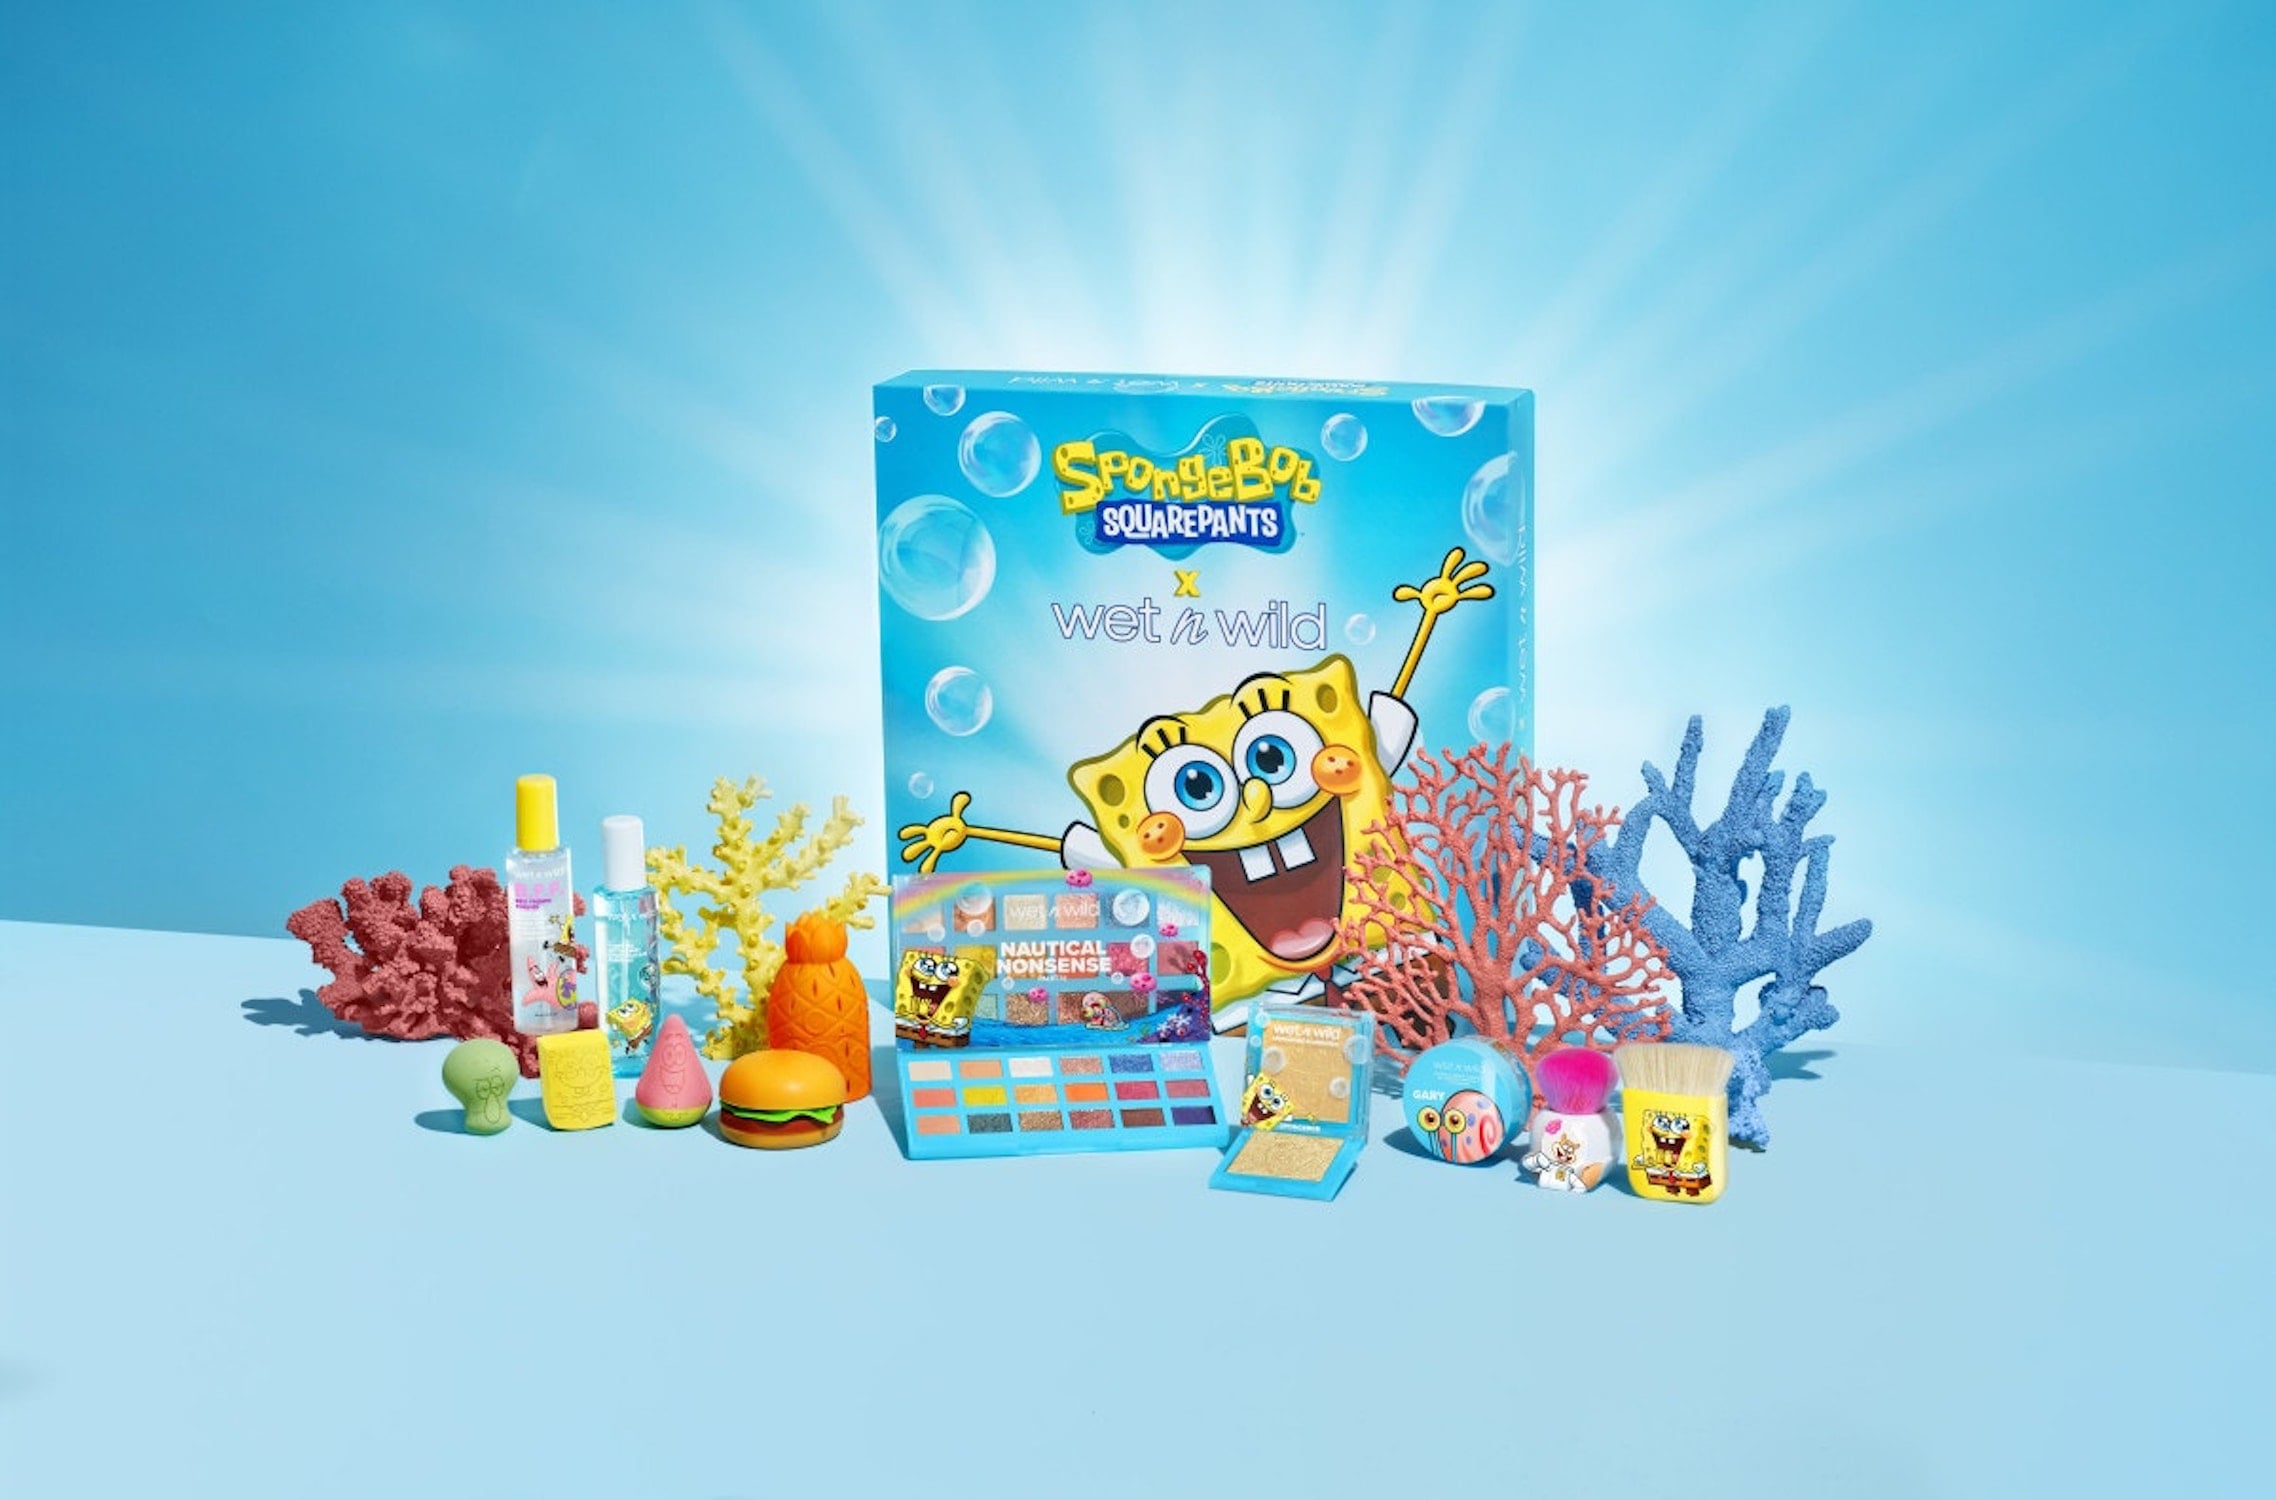 spongebob breaks garys｜TikTok Search